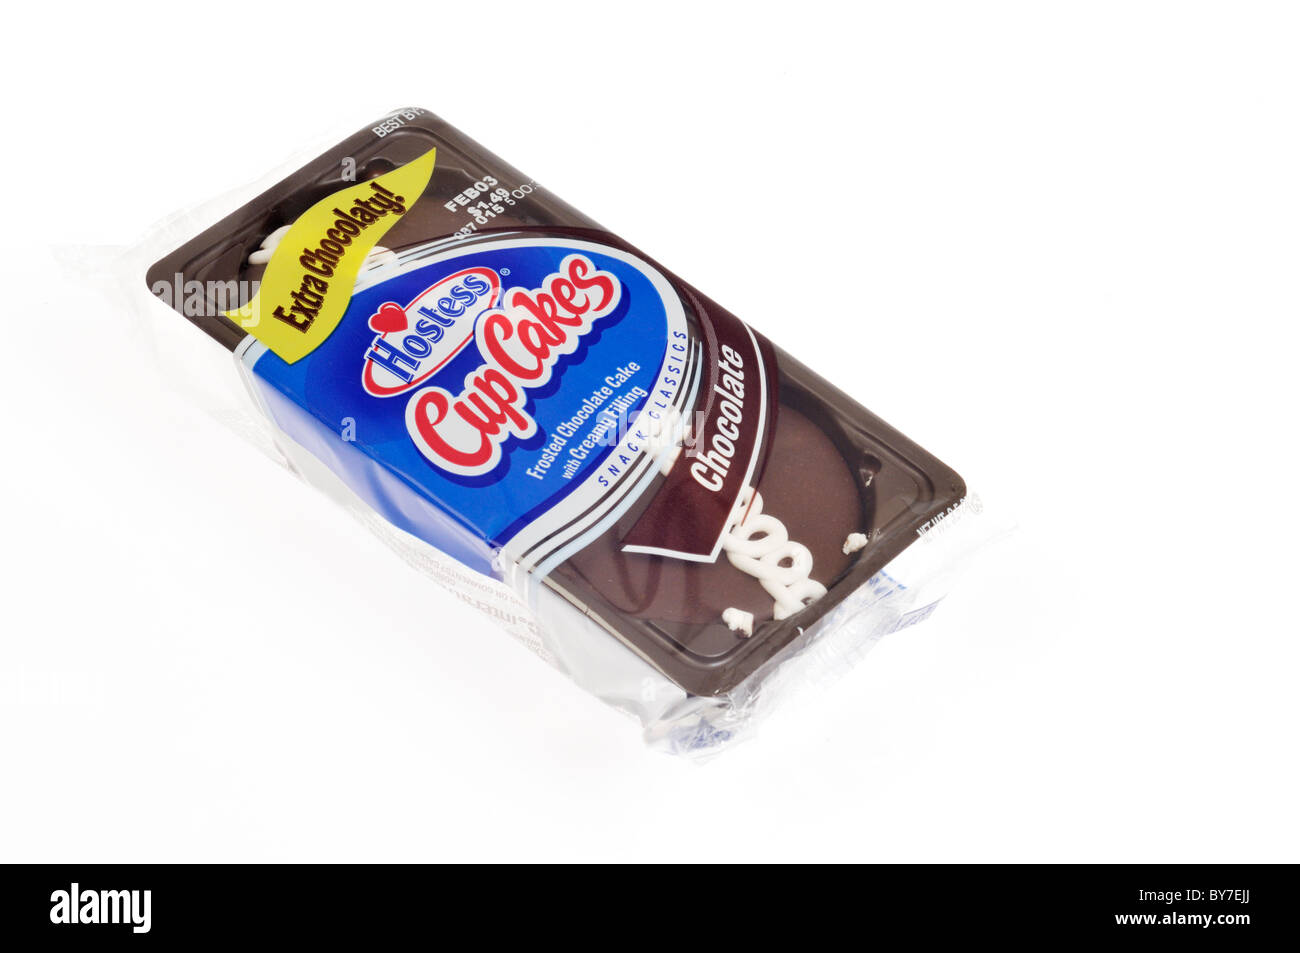 Packung mit Schokolade Hostess Cup Cakes auf weißem Hintergrund, Ausschnitt. Stockfoto